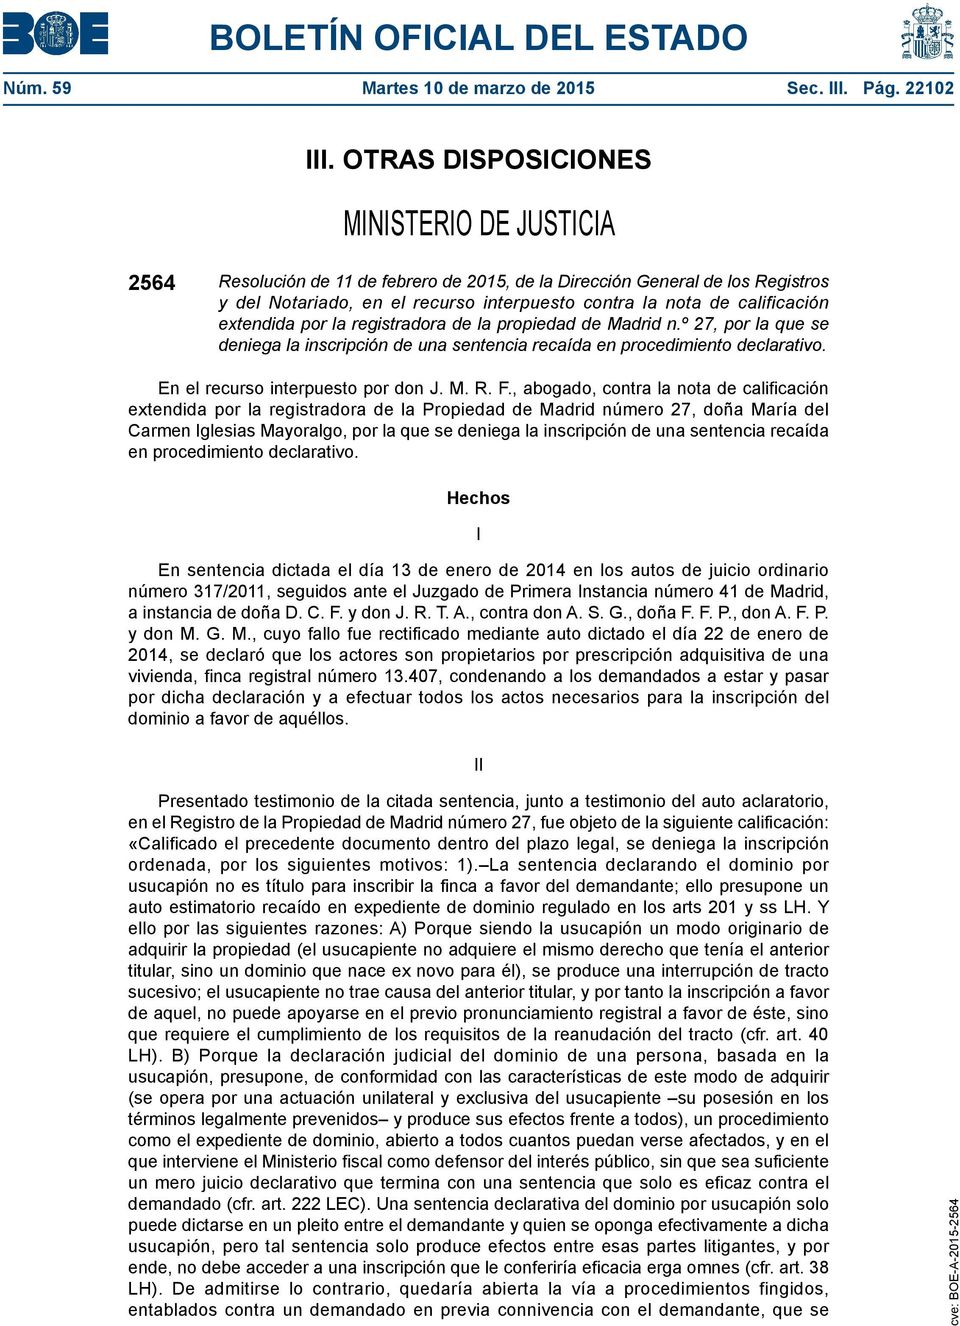 extendida por la registradora de la propiedad de Madrid n.º 27, por la que se deniega la inscripción de una sentencia recaída en procedimiento declarativo. En el recurso interpuesto por don J. M. R.